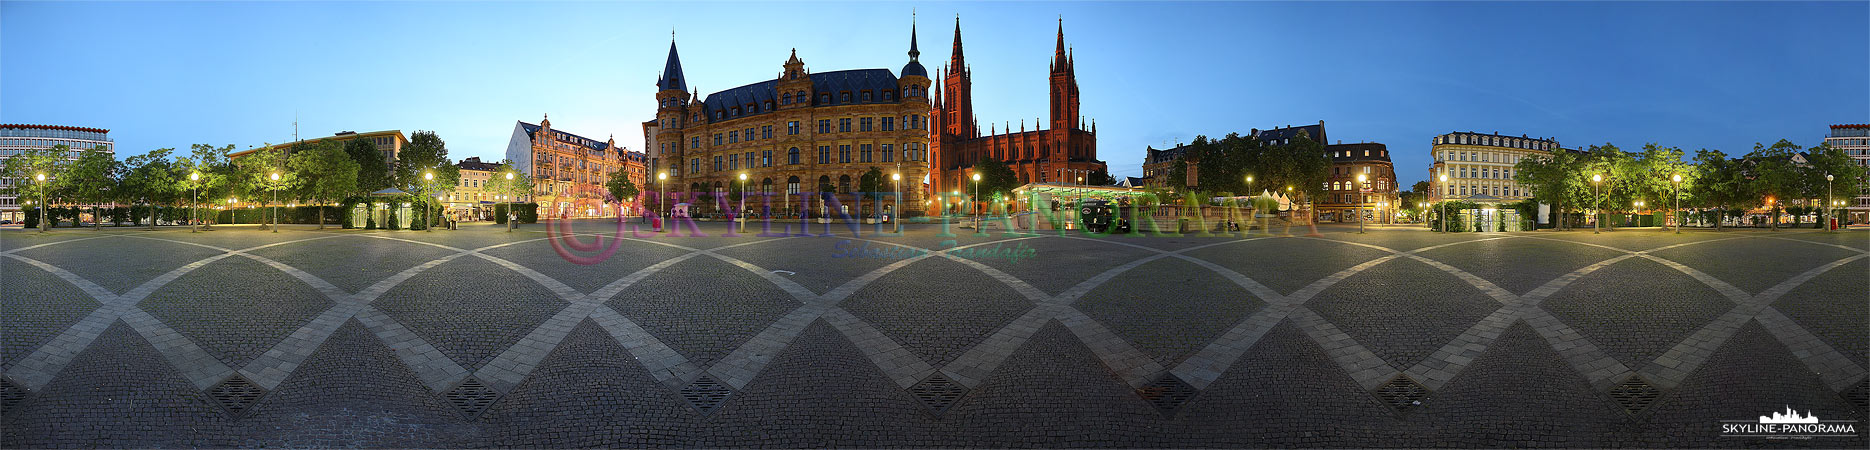 Wiesbaden Marktplatz (p_00143)